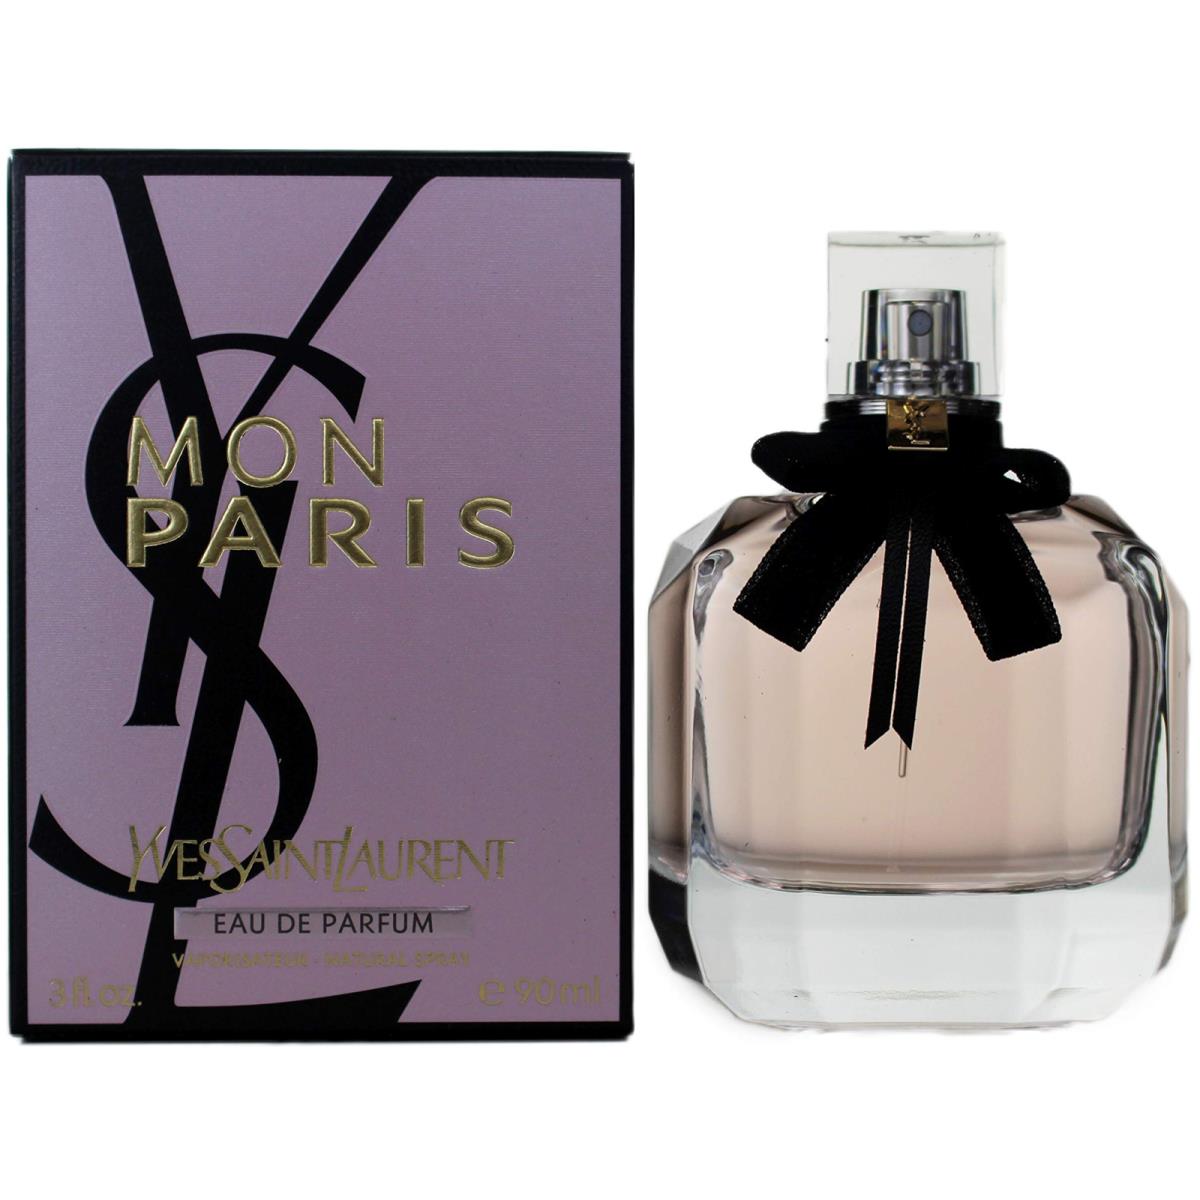 Mon Paris by Yves Saint Laurent Eau De Parfum 3oz 90ml Perfume